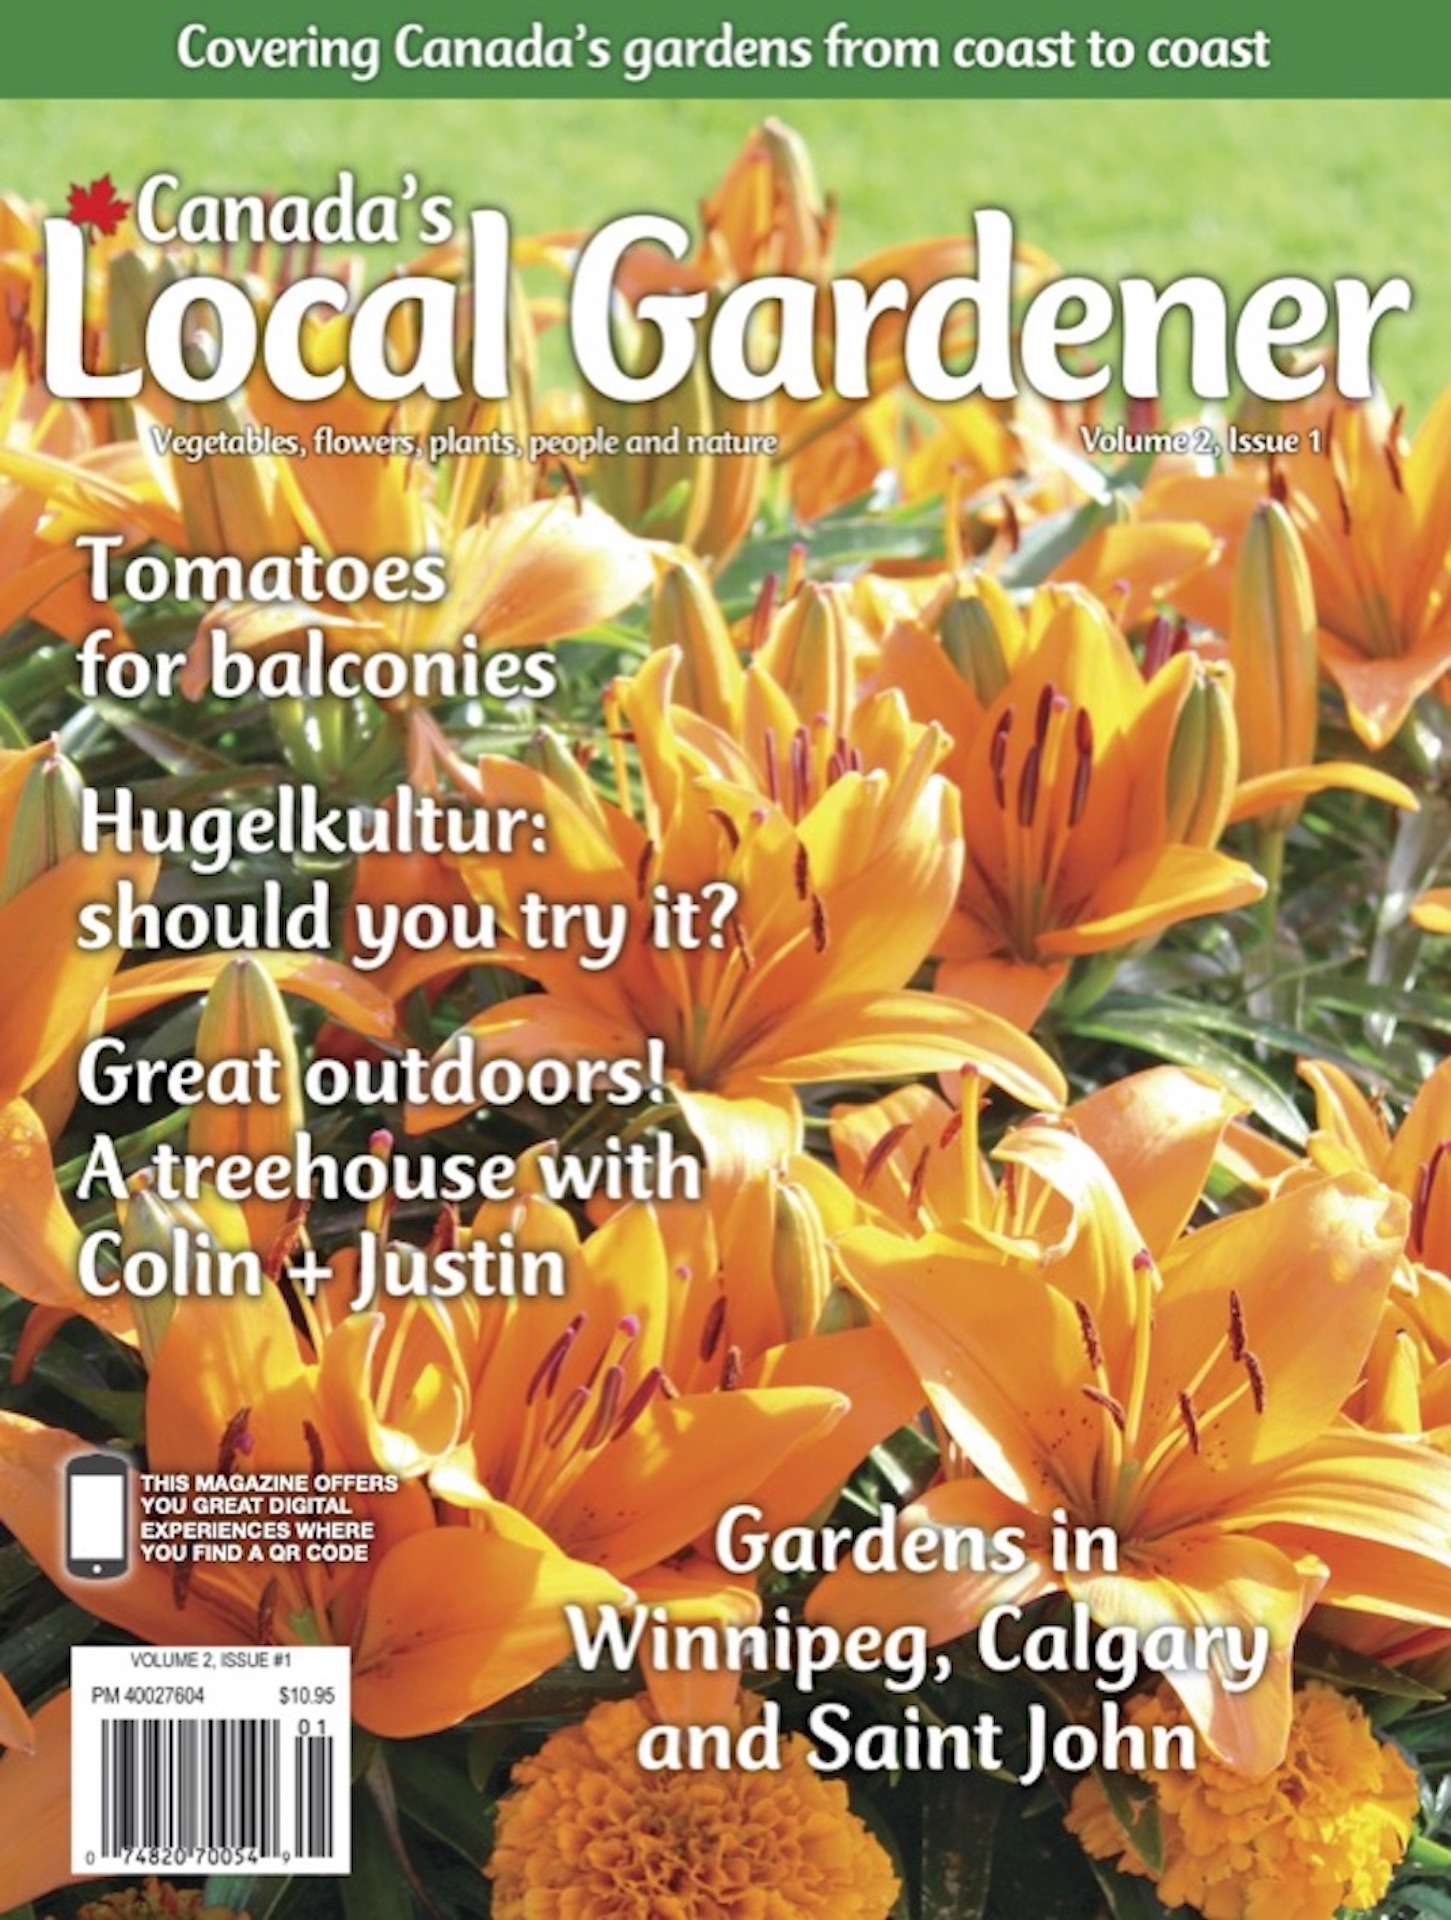 Nouveau magazine de jardinage pancanadien